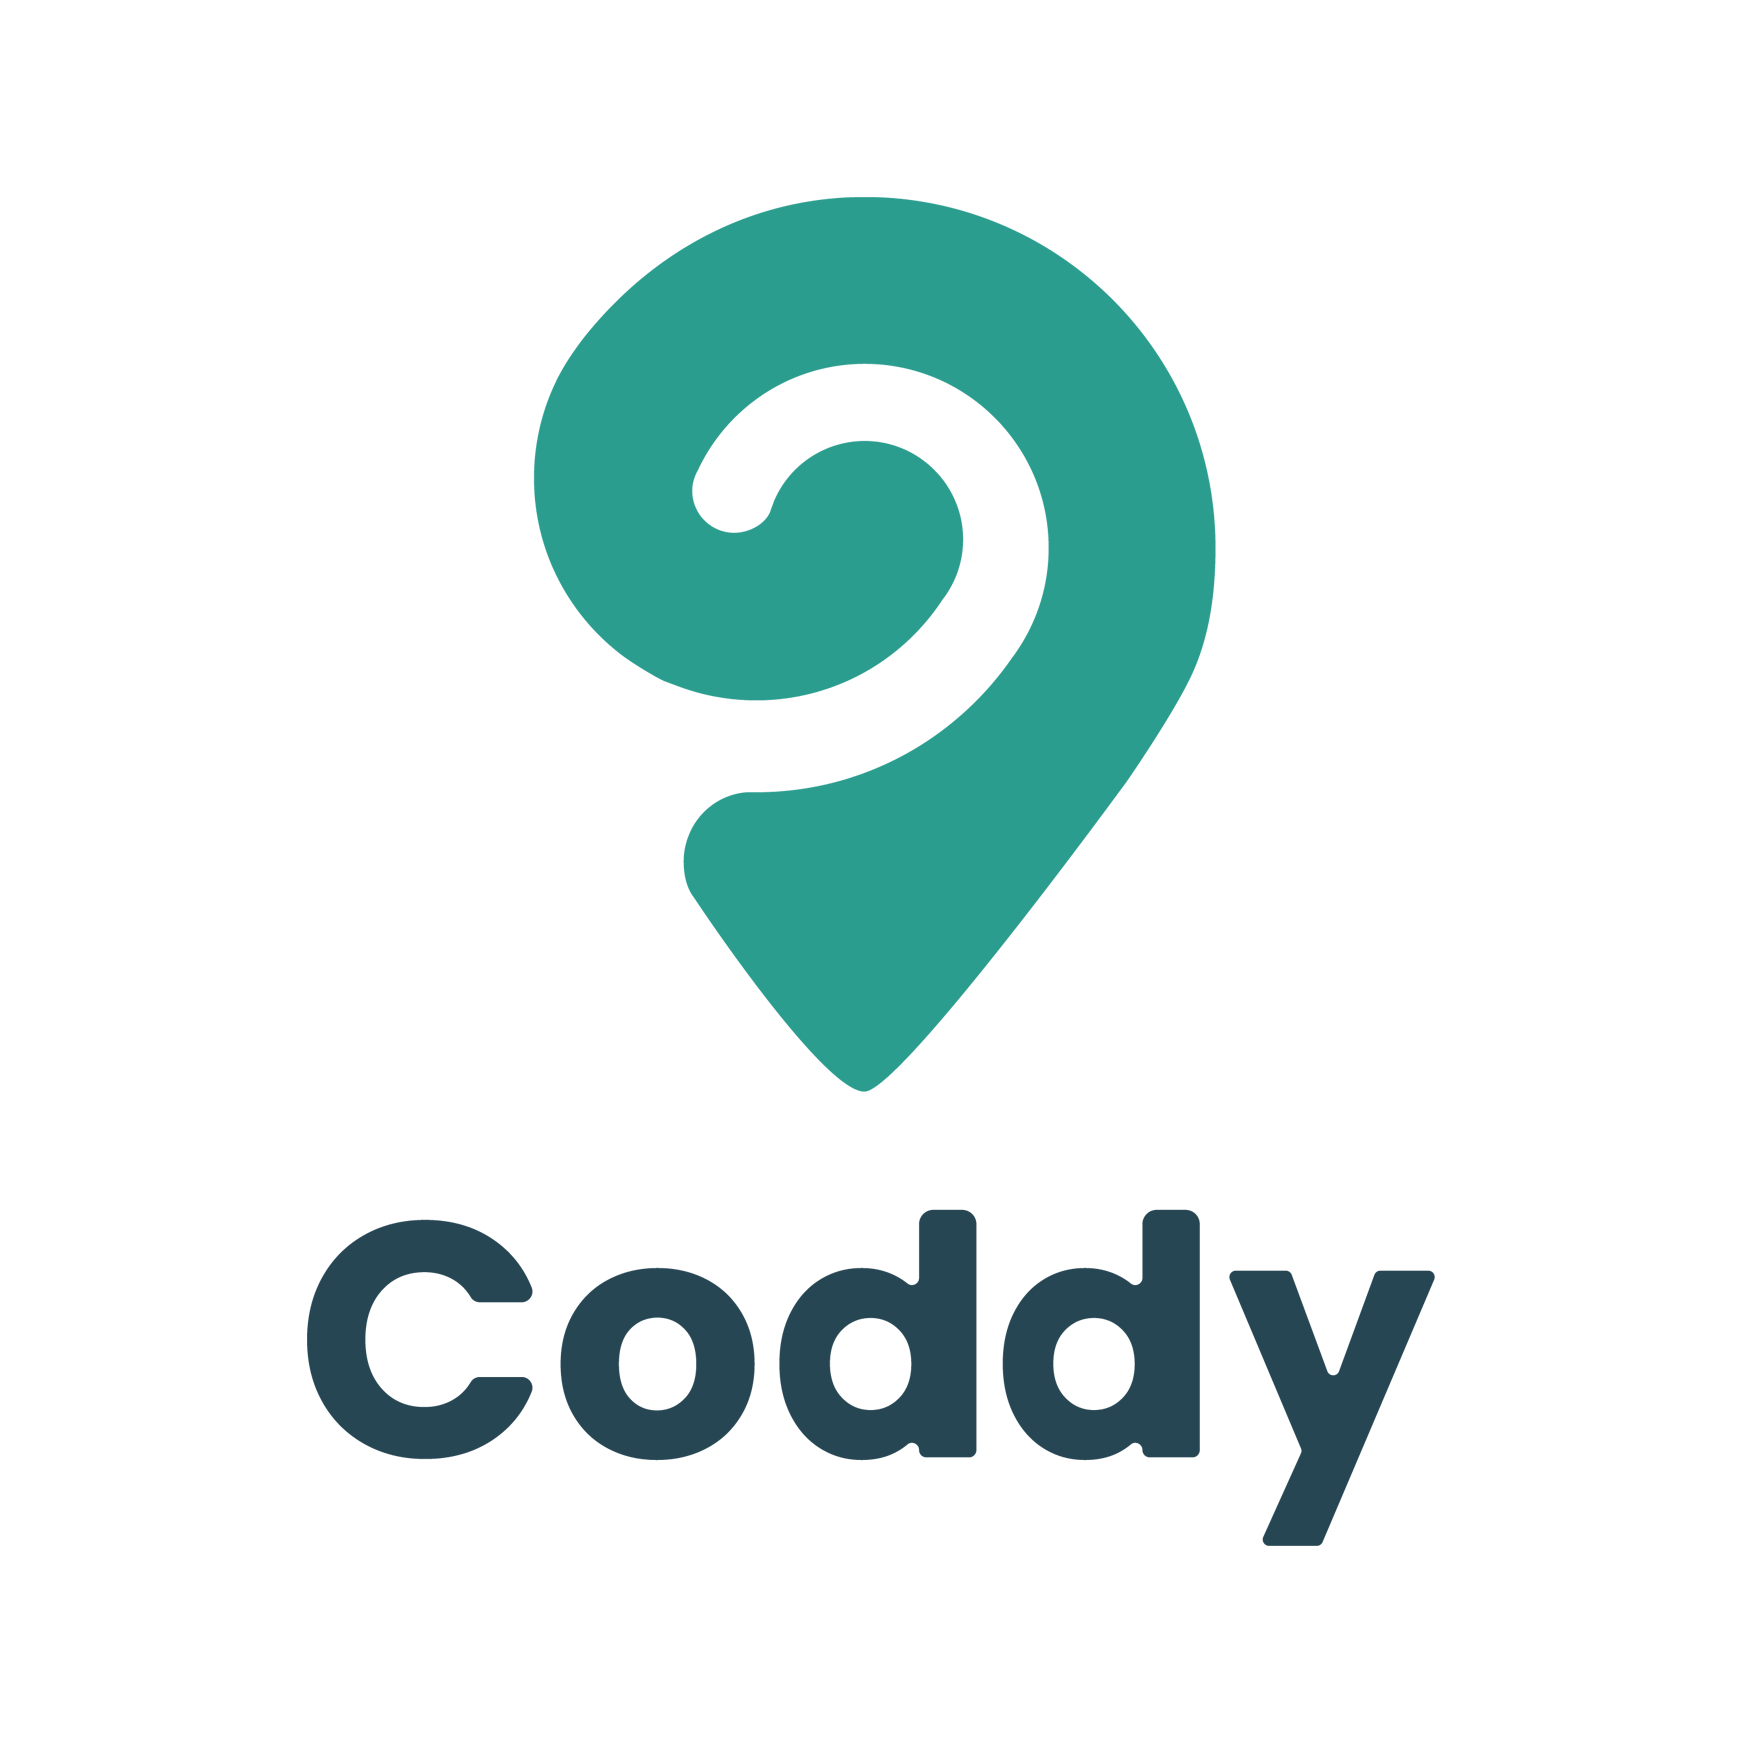 Logo Coddy